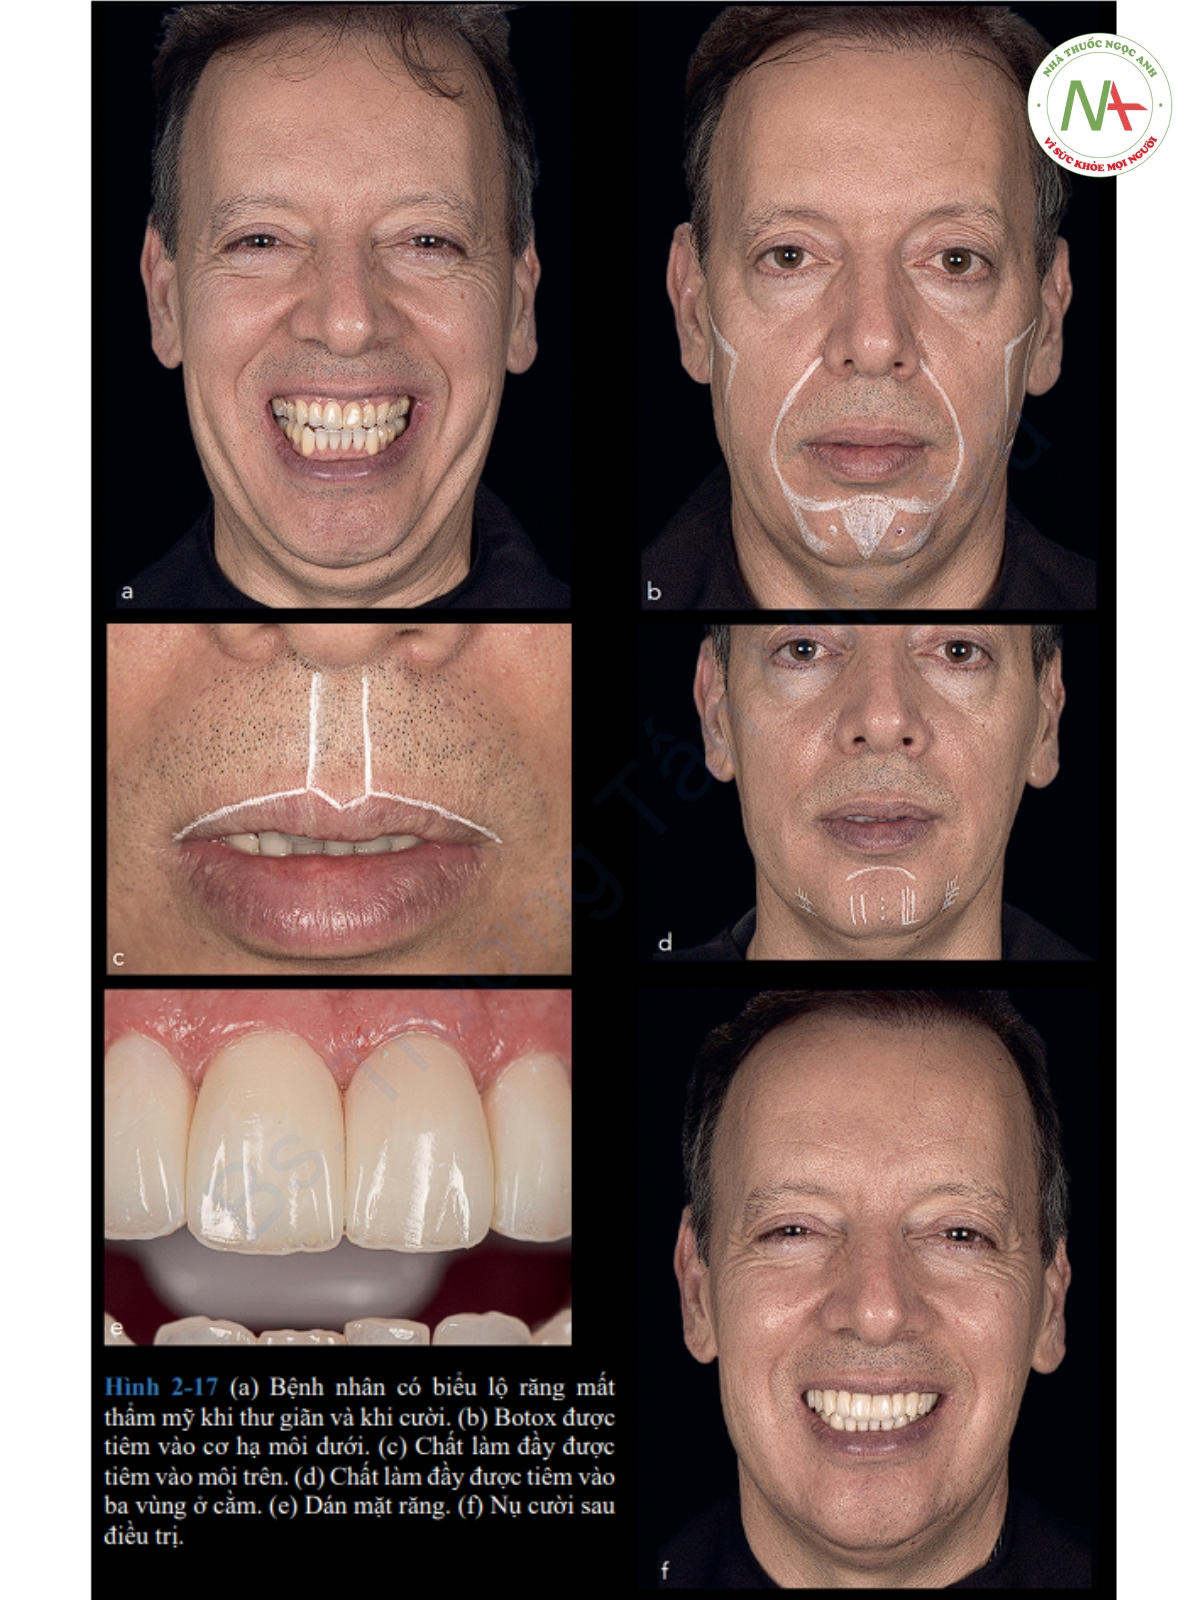 Hình 2-17 (a) Bệnh nhân có biểu lộ răng mất thẩm mỹ khi thư giãn và khi cười. (b) Botox được tiêm vào cơ hạ môi dưới. (c) Chất làm đầy được tiêm vào môi trên. (d) Chất làm đầy được tiêm vào ba vùng ở cằm. (e) Dán mặt răng. (f) Nụ cười sau điều trị.